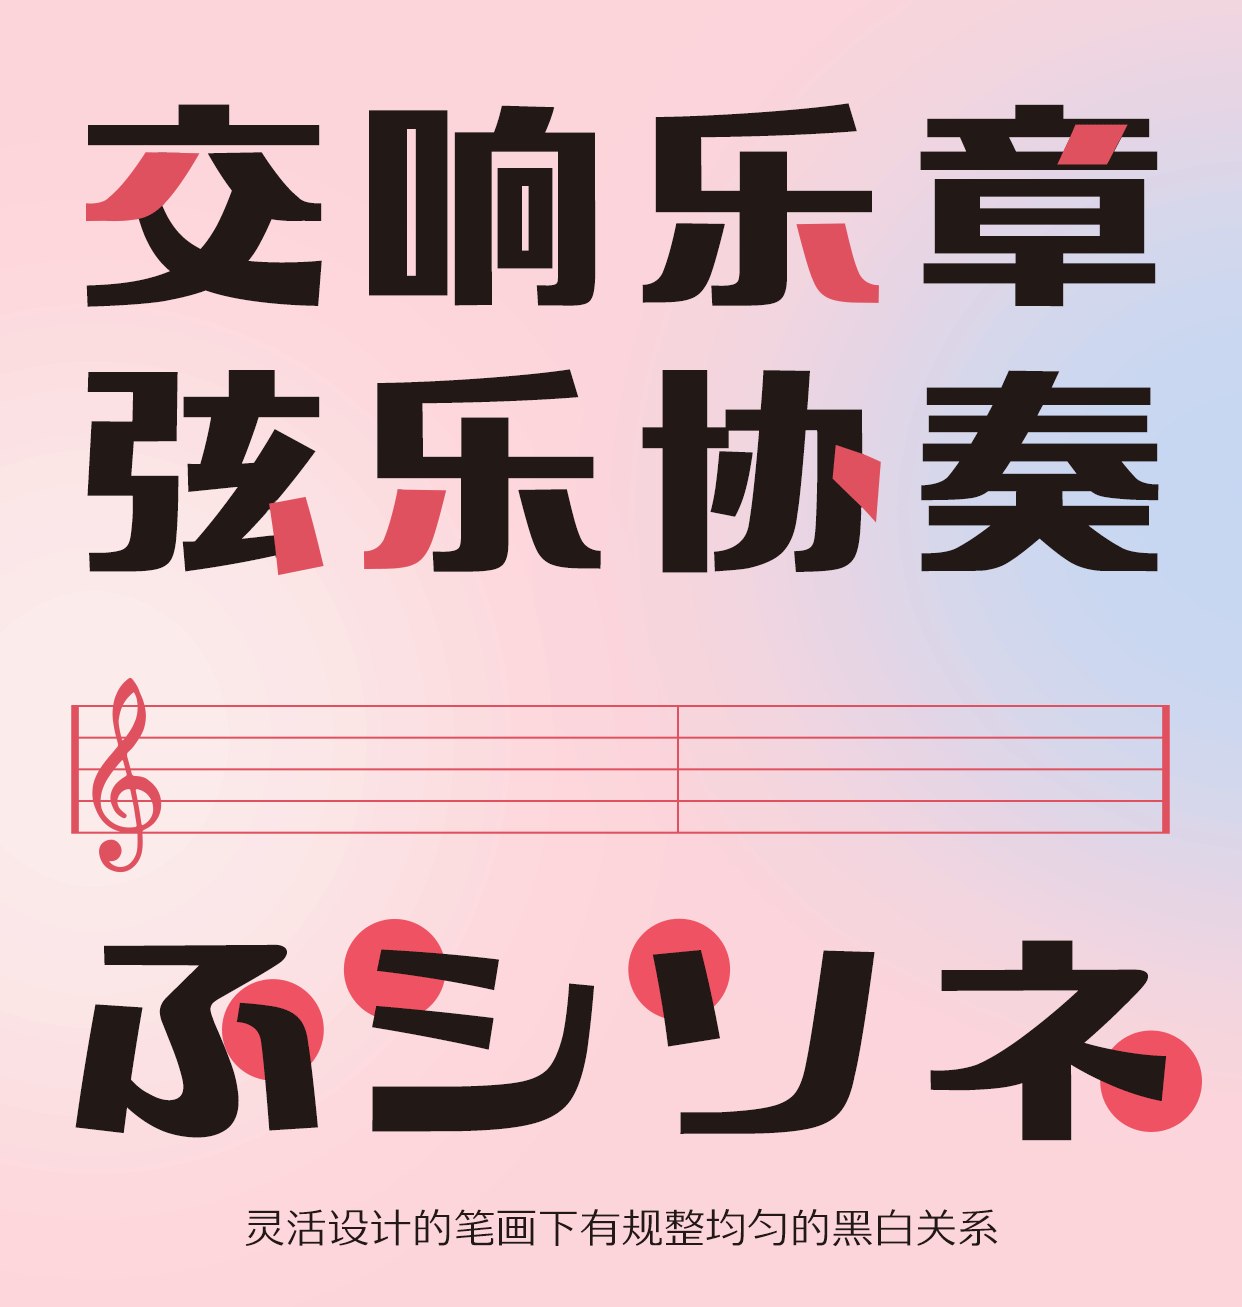 GEETYPE上野森黑体字体专业展示